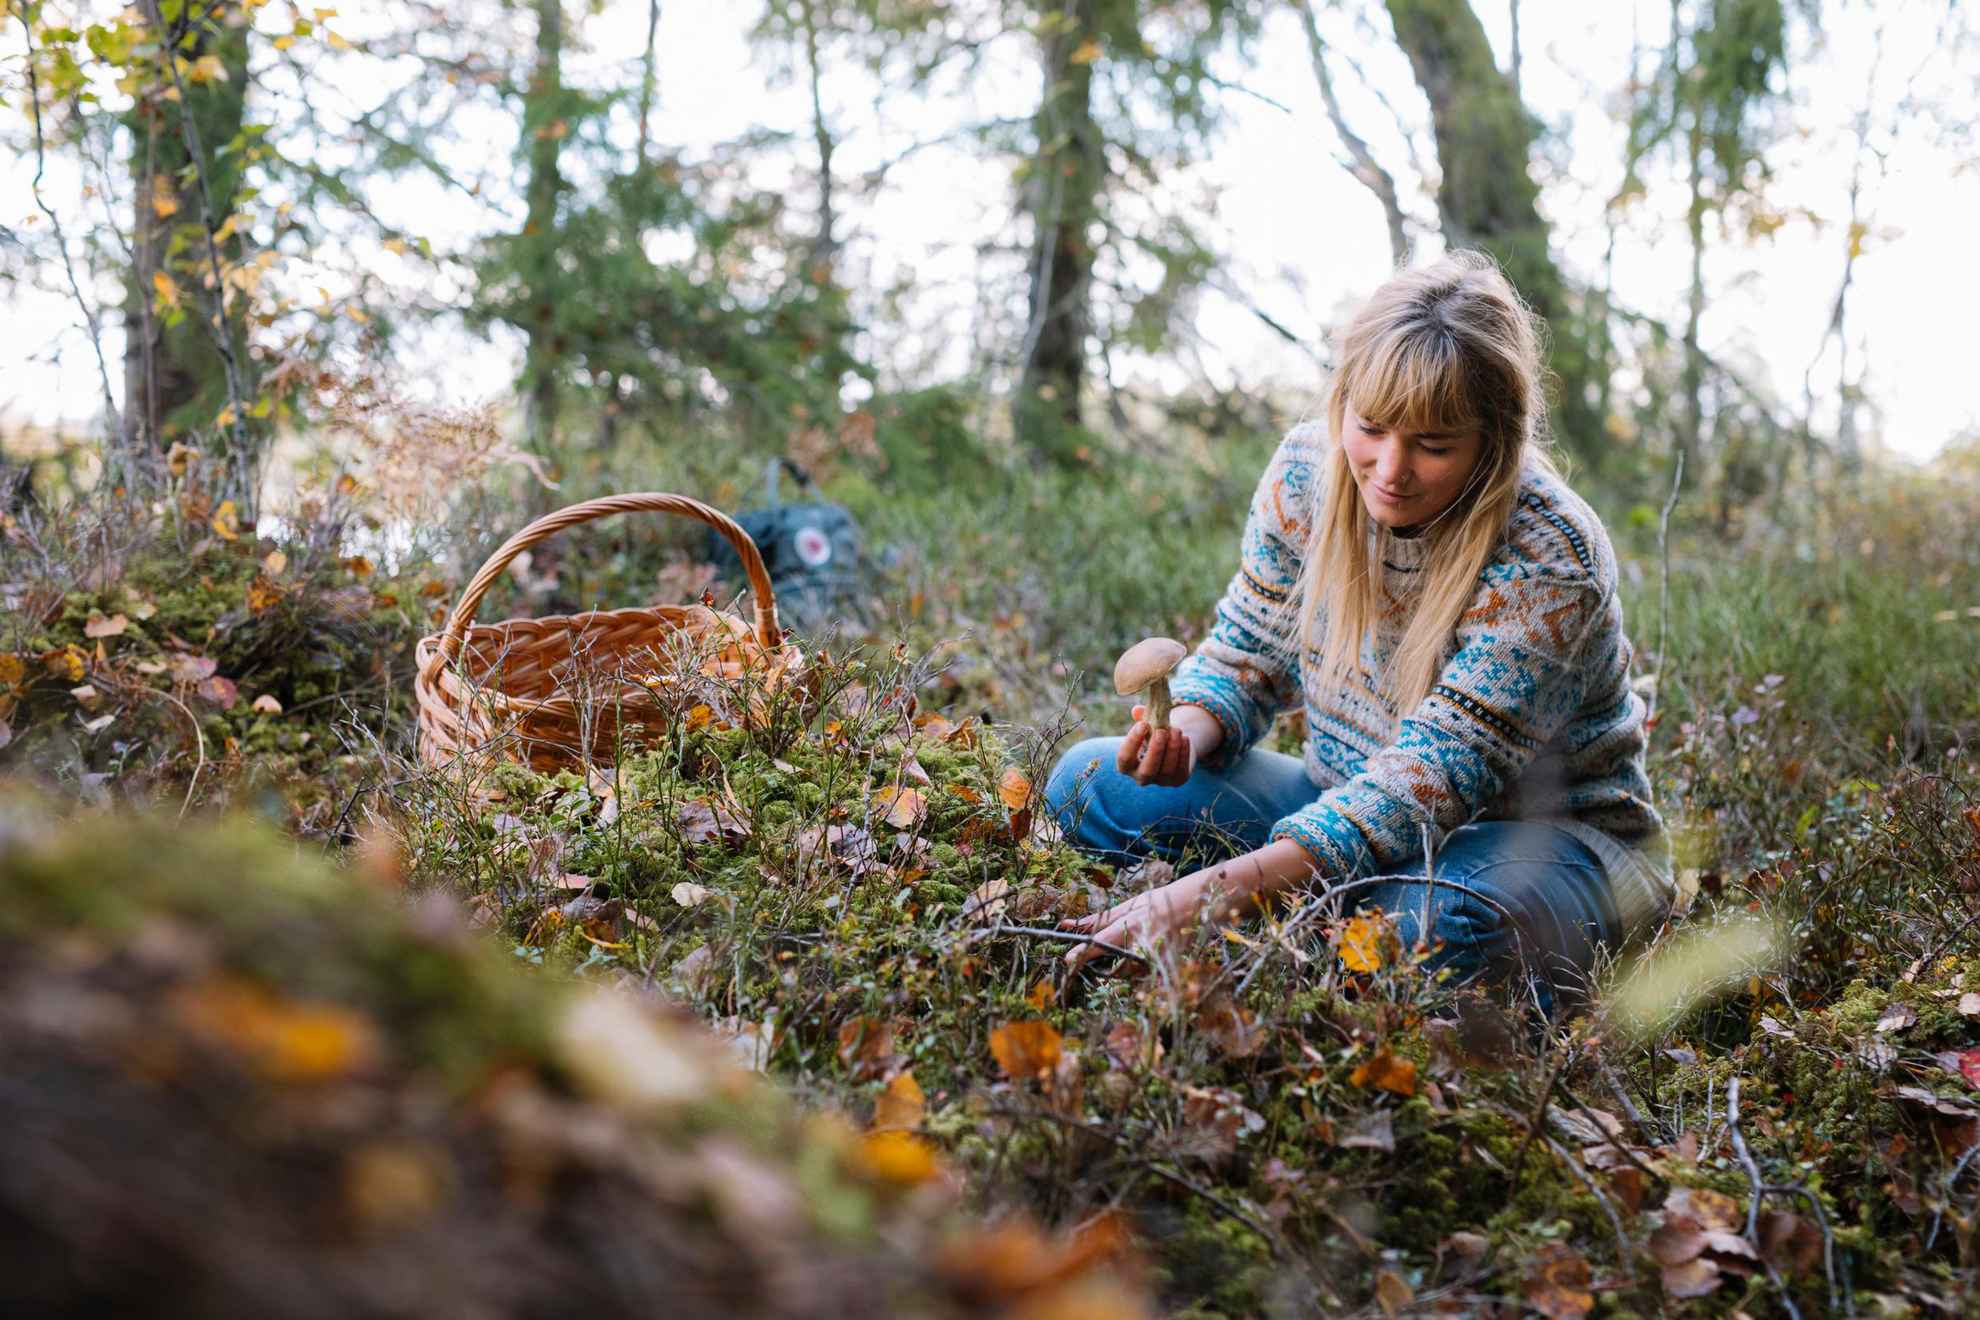 Une femme agenouillée en train de ramasser des champignons dans la forêt. Un panier est posé à côté d'elle.